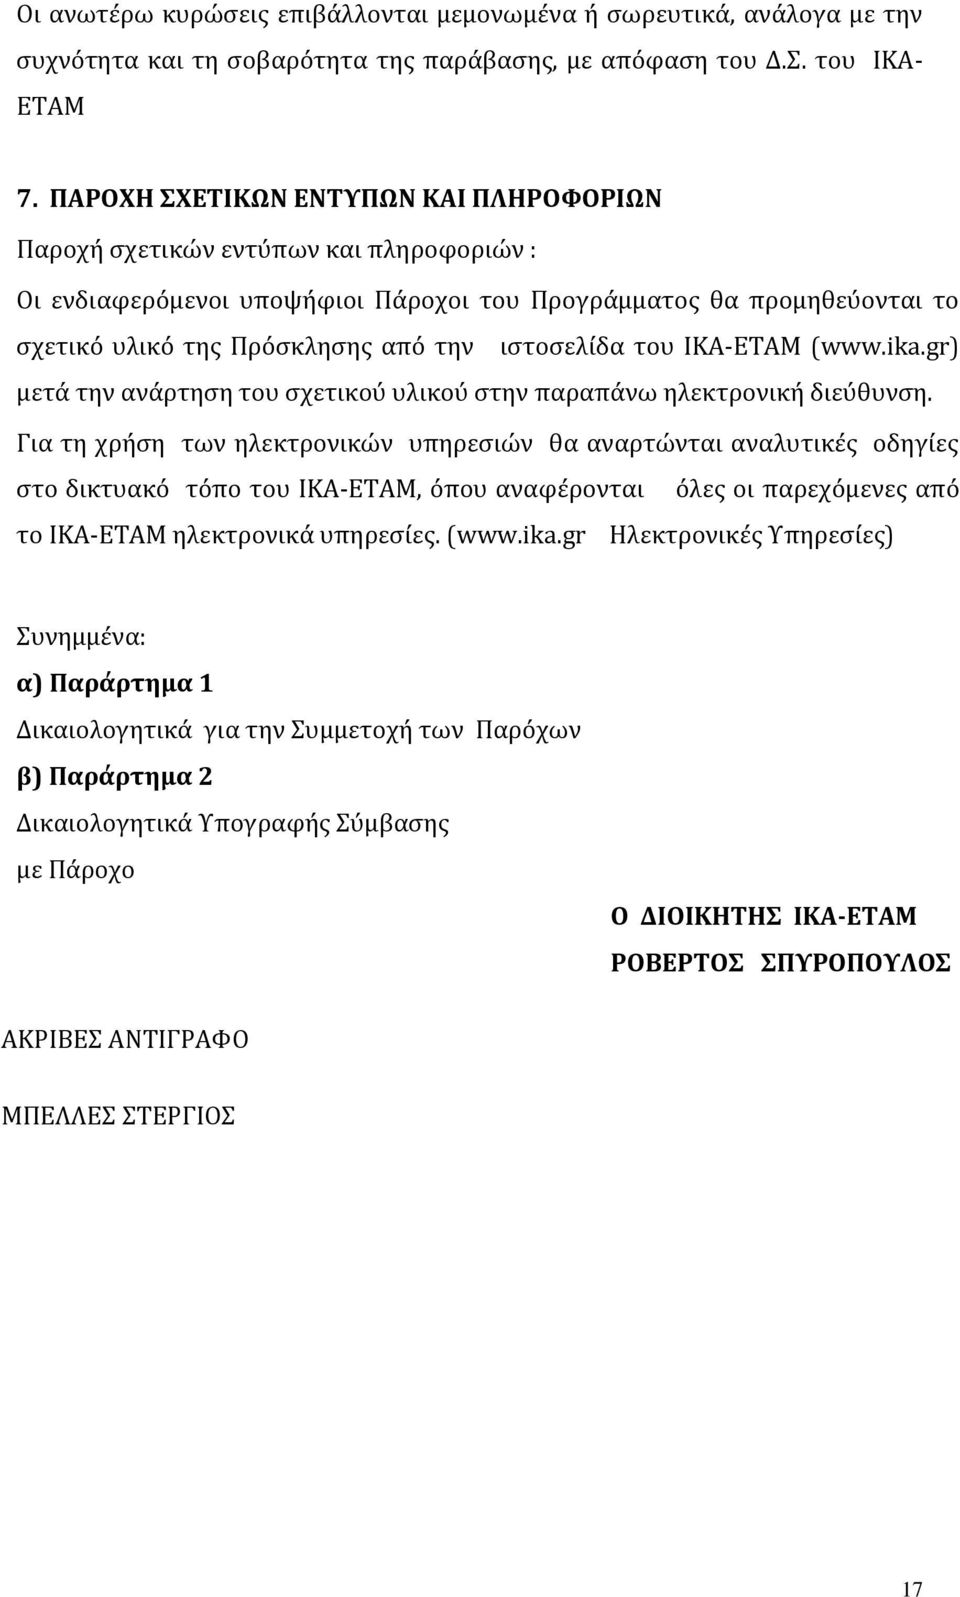 ιστοσελίδα του ΙΚΑ-ΕΤΑΜ (www.ika.gr) μετά την ανάρτηση του σχετικού υλικού στην παραπάνω ηλεκτρονική διεύθυνση.